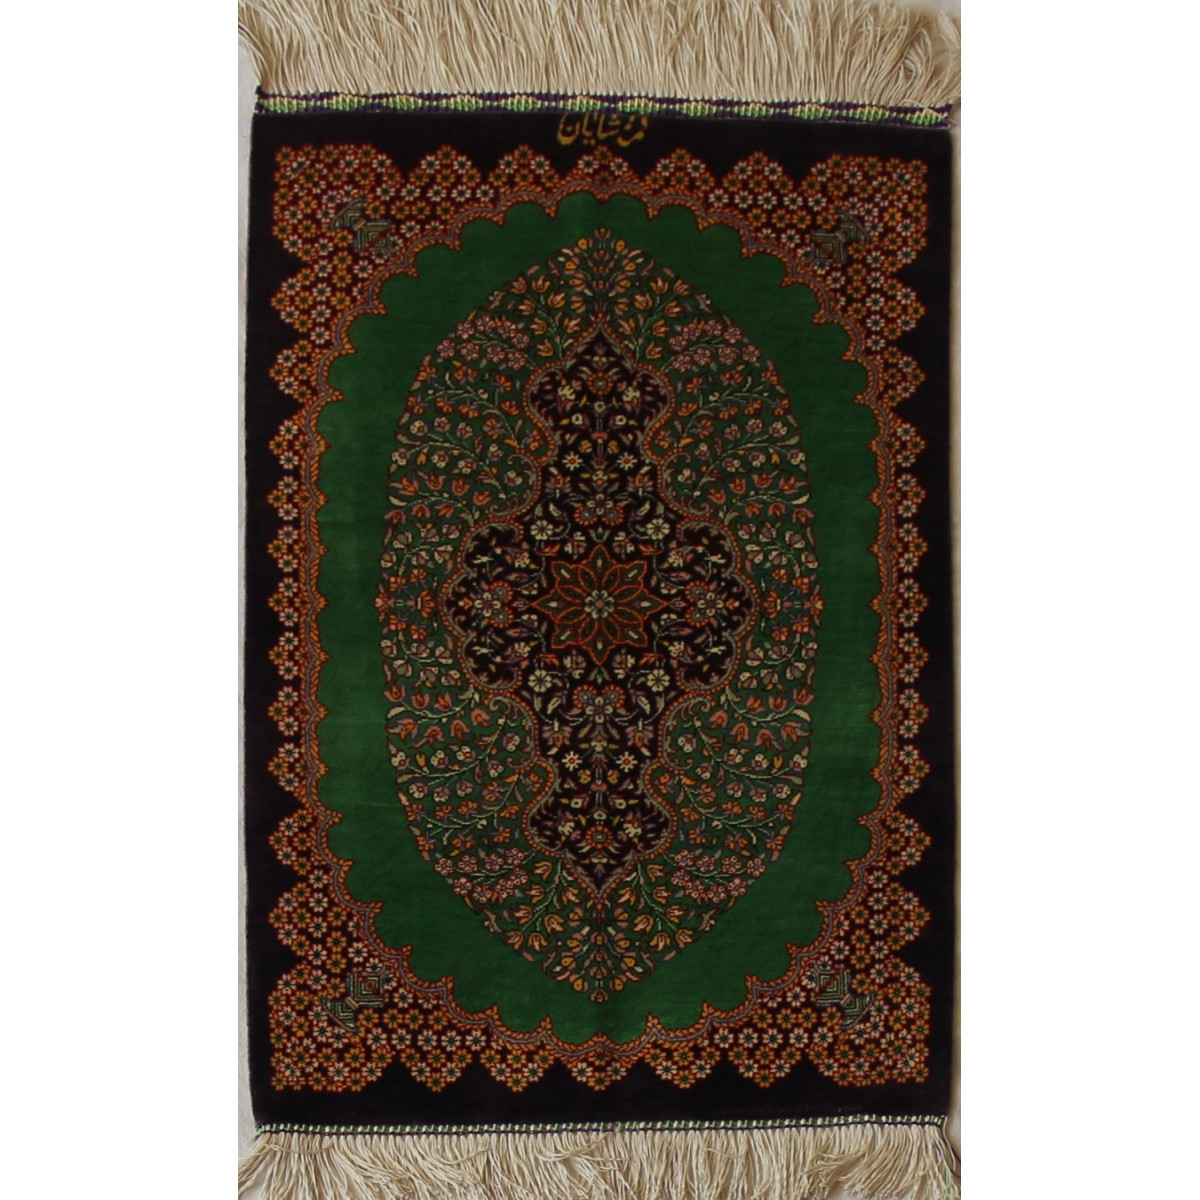 Qom Persian Silk Rug - PRQ1011-Persian Handicrafts